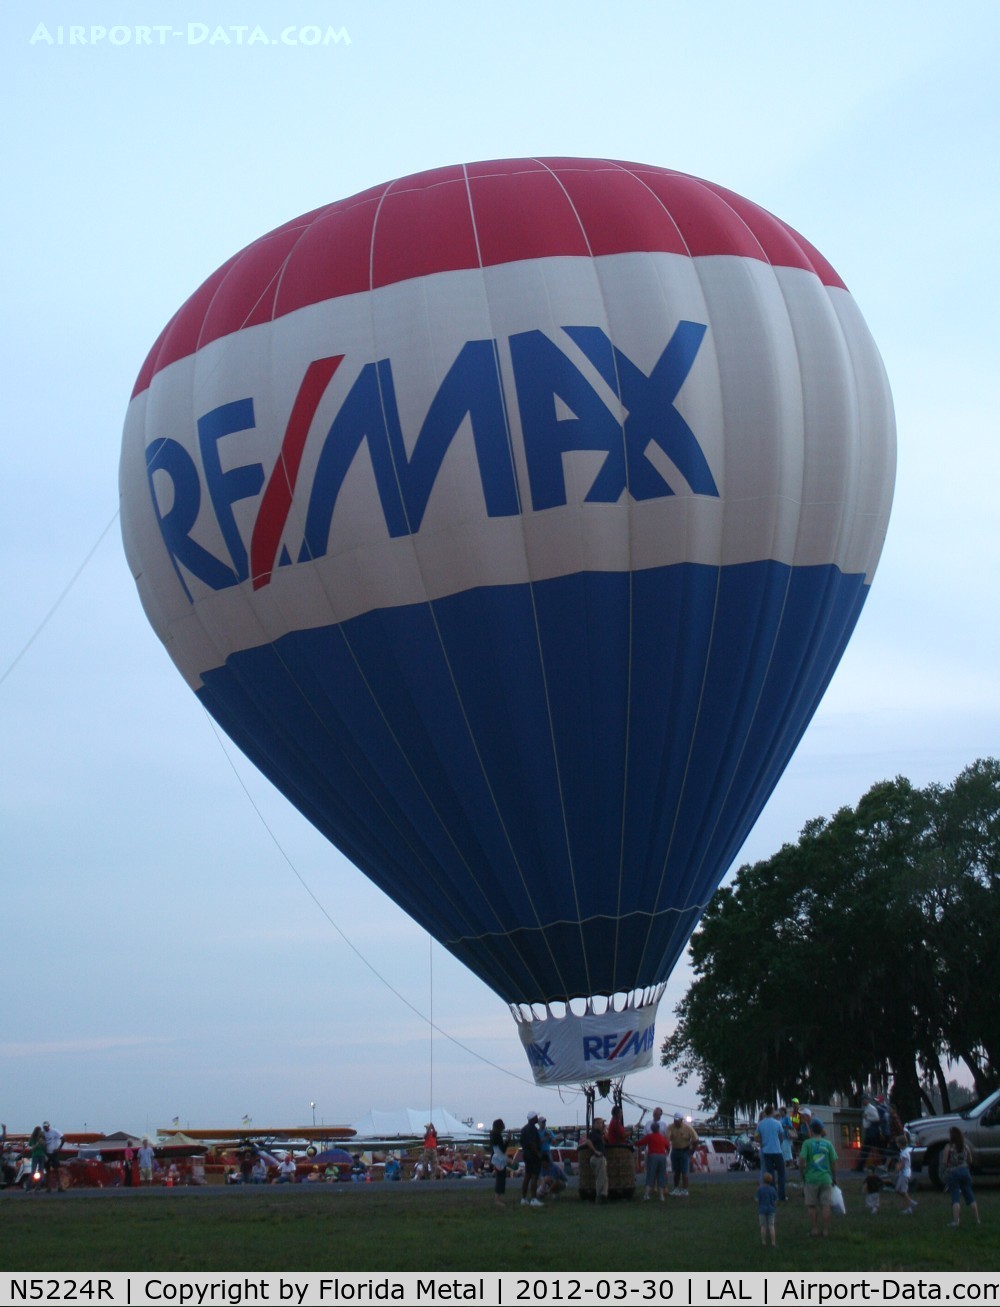 N5224R, 2006 Aerostar International Inc S-57A C/N S57A-3246, Remax balloon